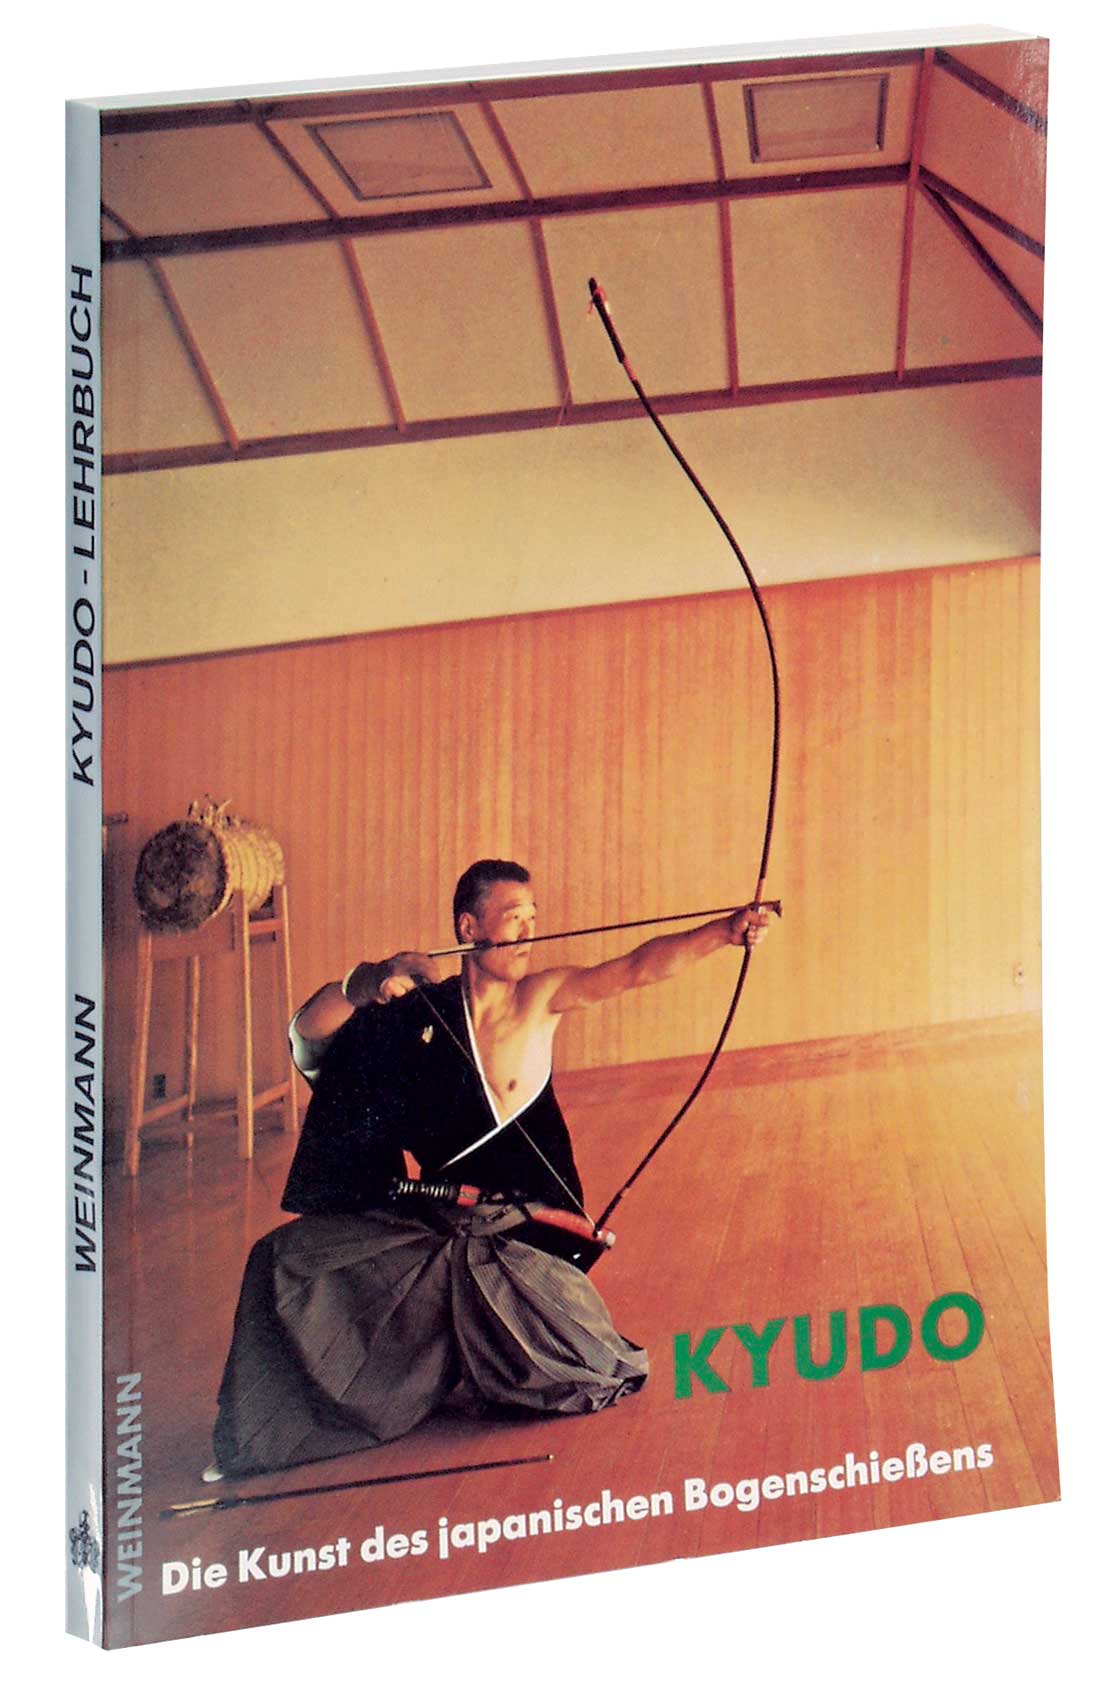 Kyudo - Die Kunst des japanischen Bogenschießens